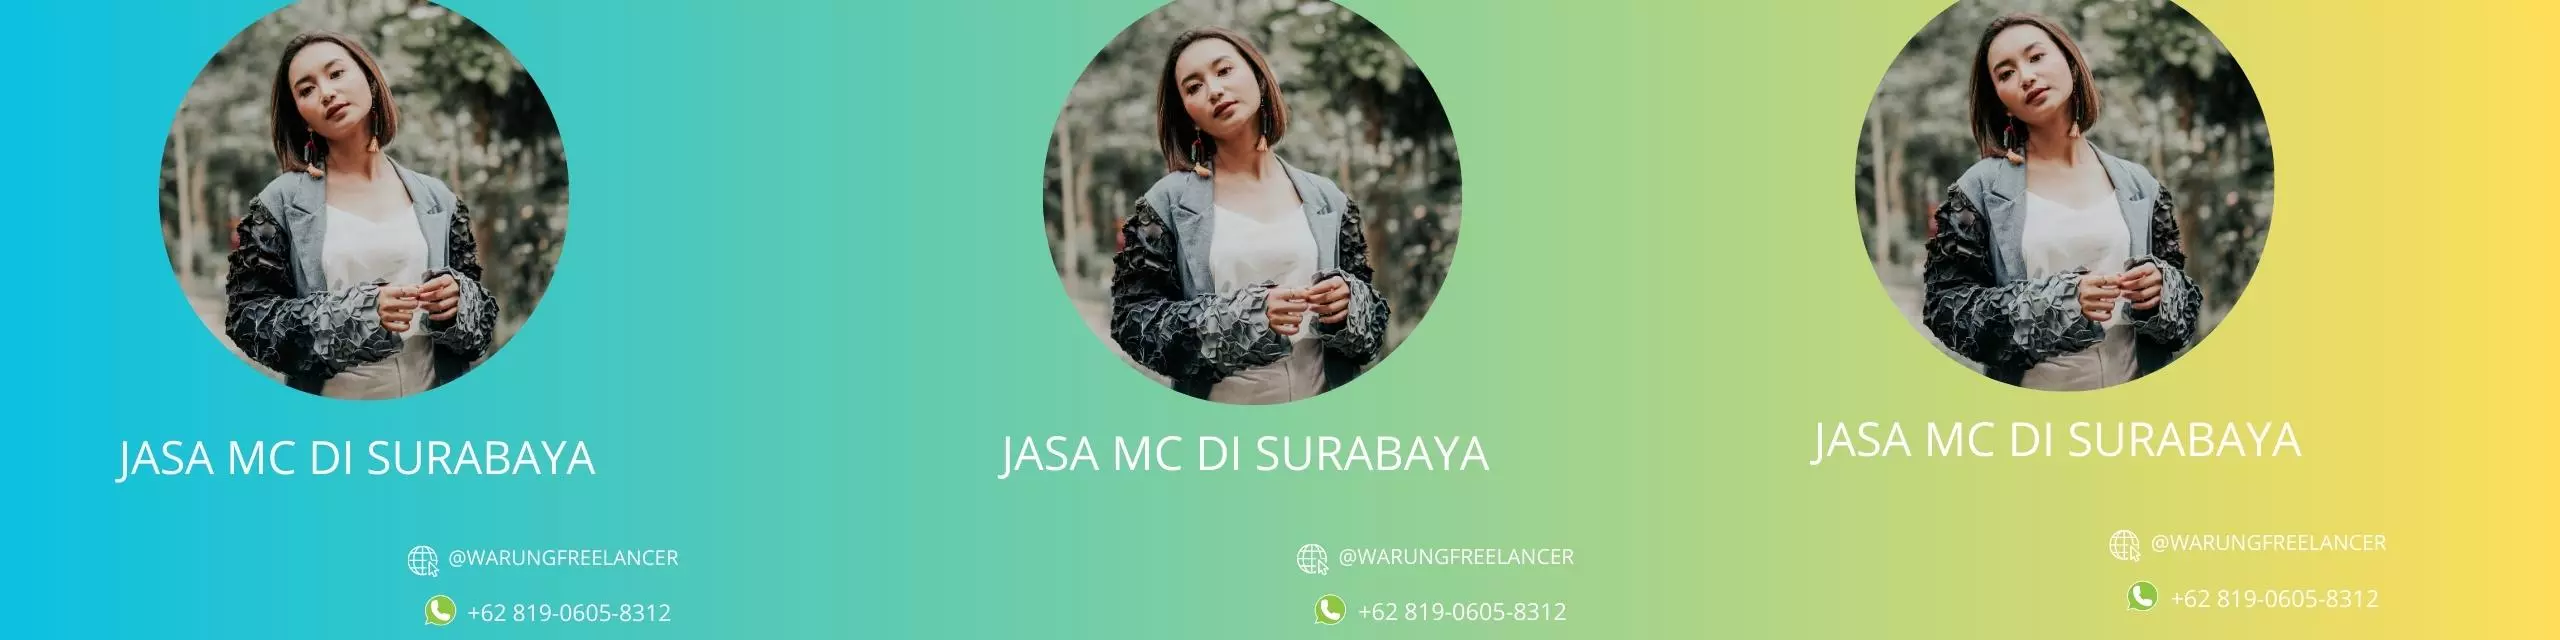 Jasa MC Di Surabaya